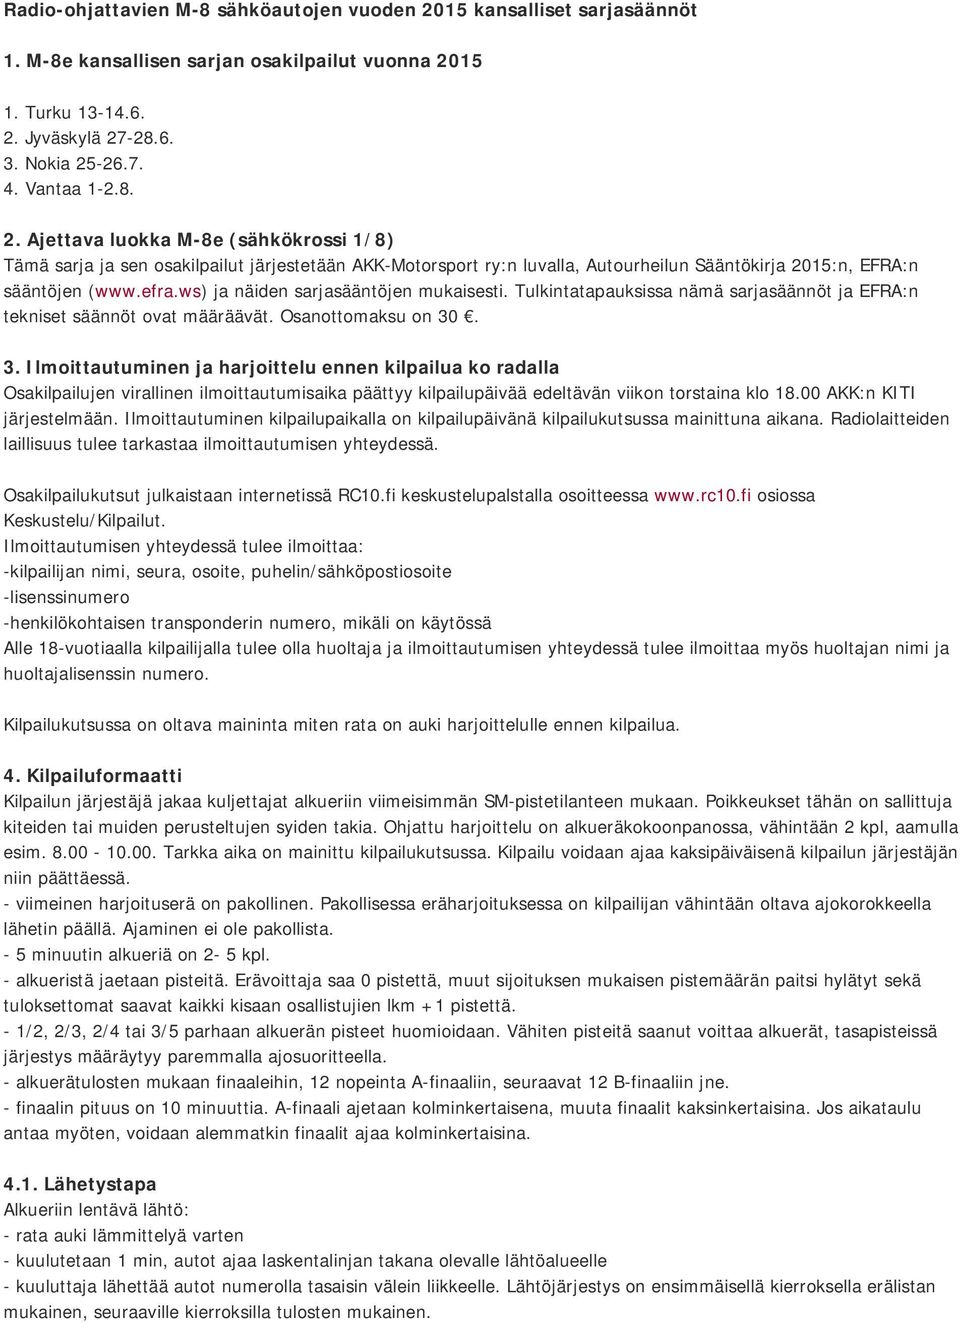 15 1. Turku 13-14.6. 2. Jyväskylä 27-28.6. 3. Nokia 25-26.7. 4. Vantaa 1-2.8. 2. Ajettava luokka M-8e (sähkökrossi 1/8) Tämä sarja ja sen osakilpailut järjestetään AKK-Motorsport ry:n luvalla, Autourheilun Sääntökirja 2015:n, EFRA:n sääntöjen (www.